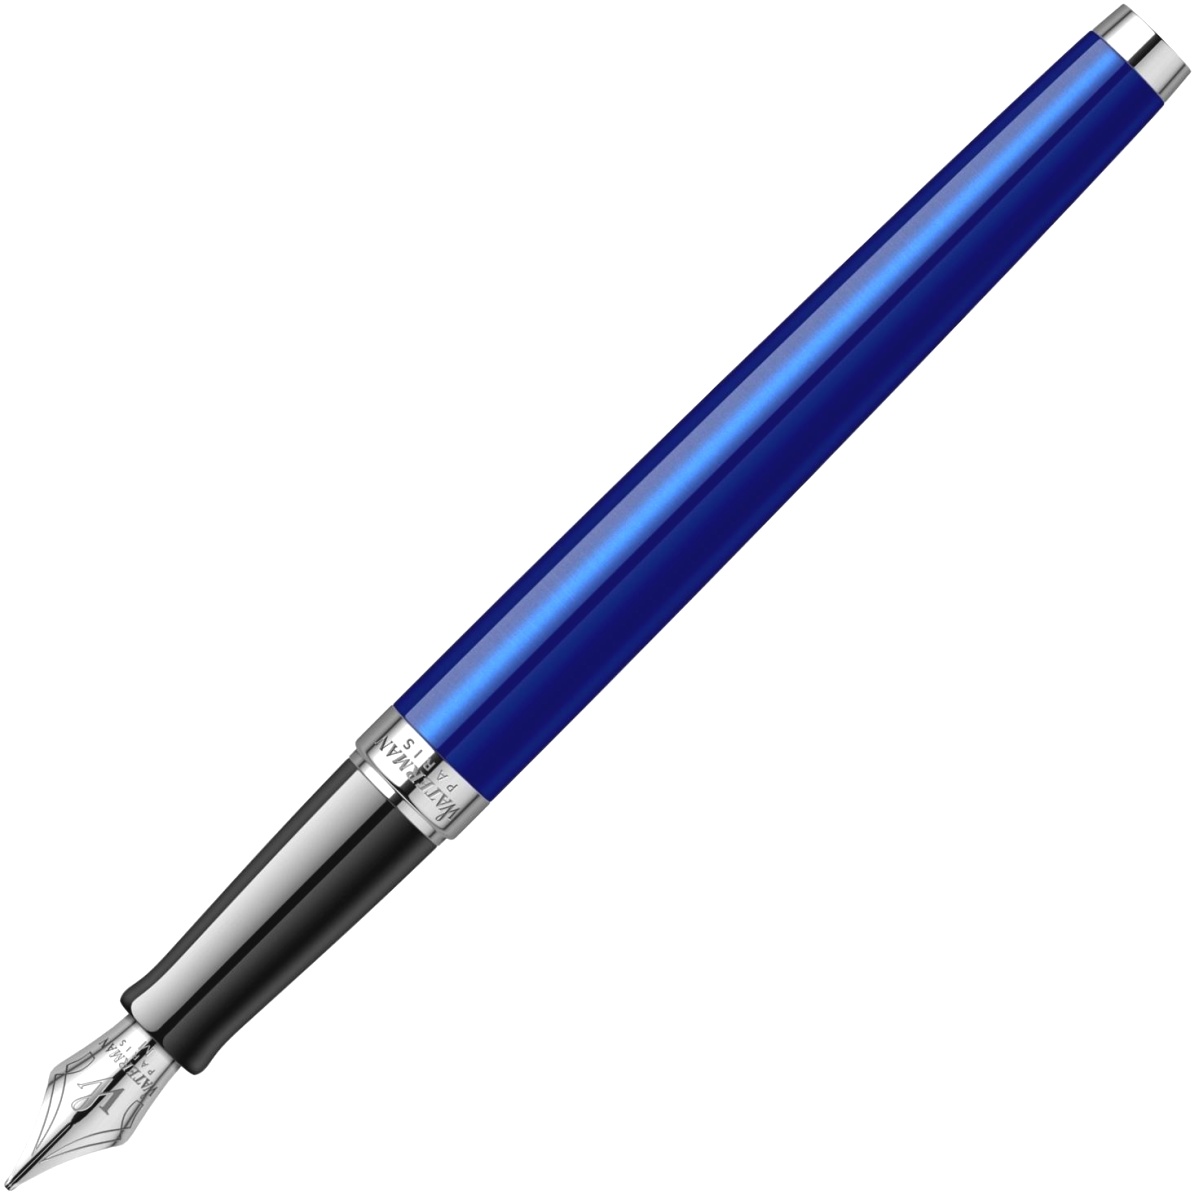  Ручка перьевая Waterman Hemisphere 2018, Bright Blue CT (Перо F), фото 4